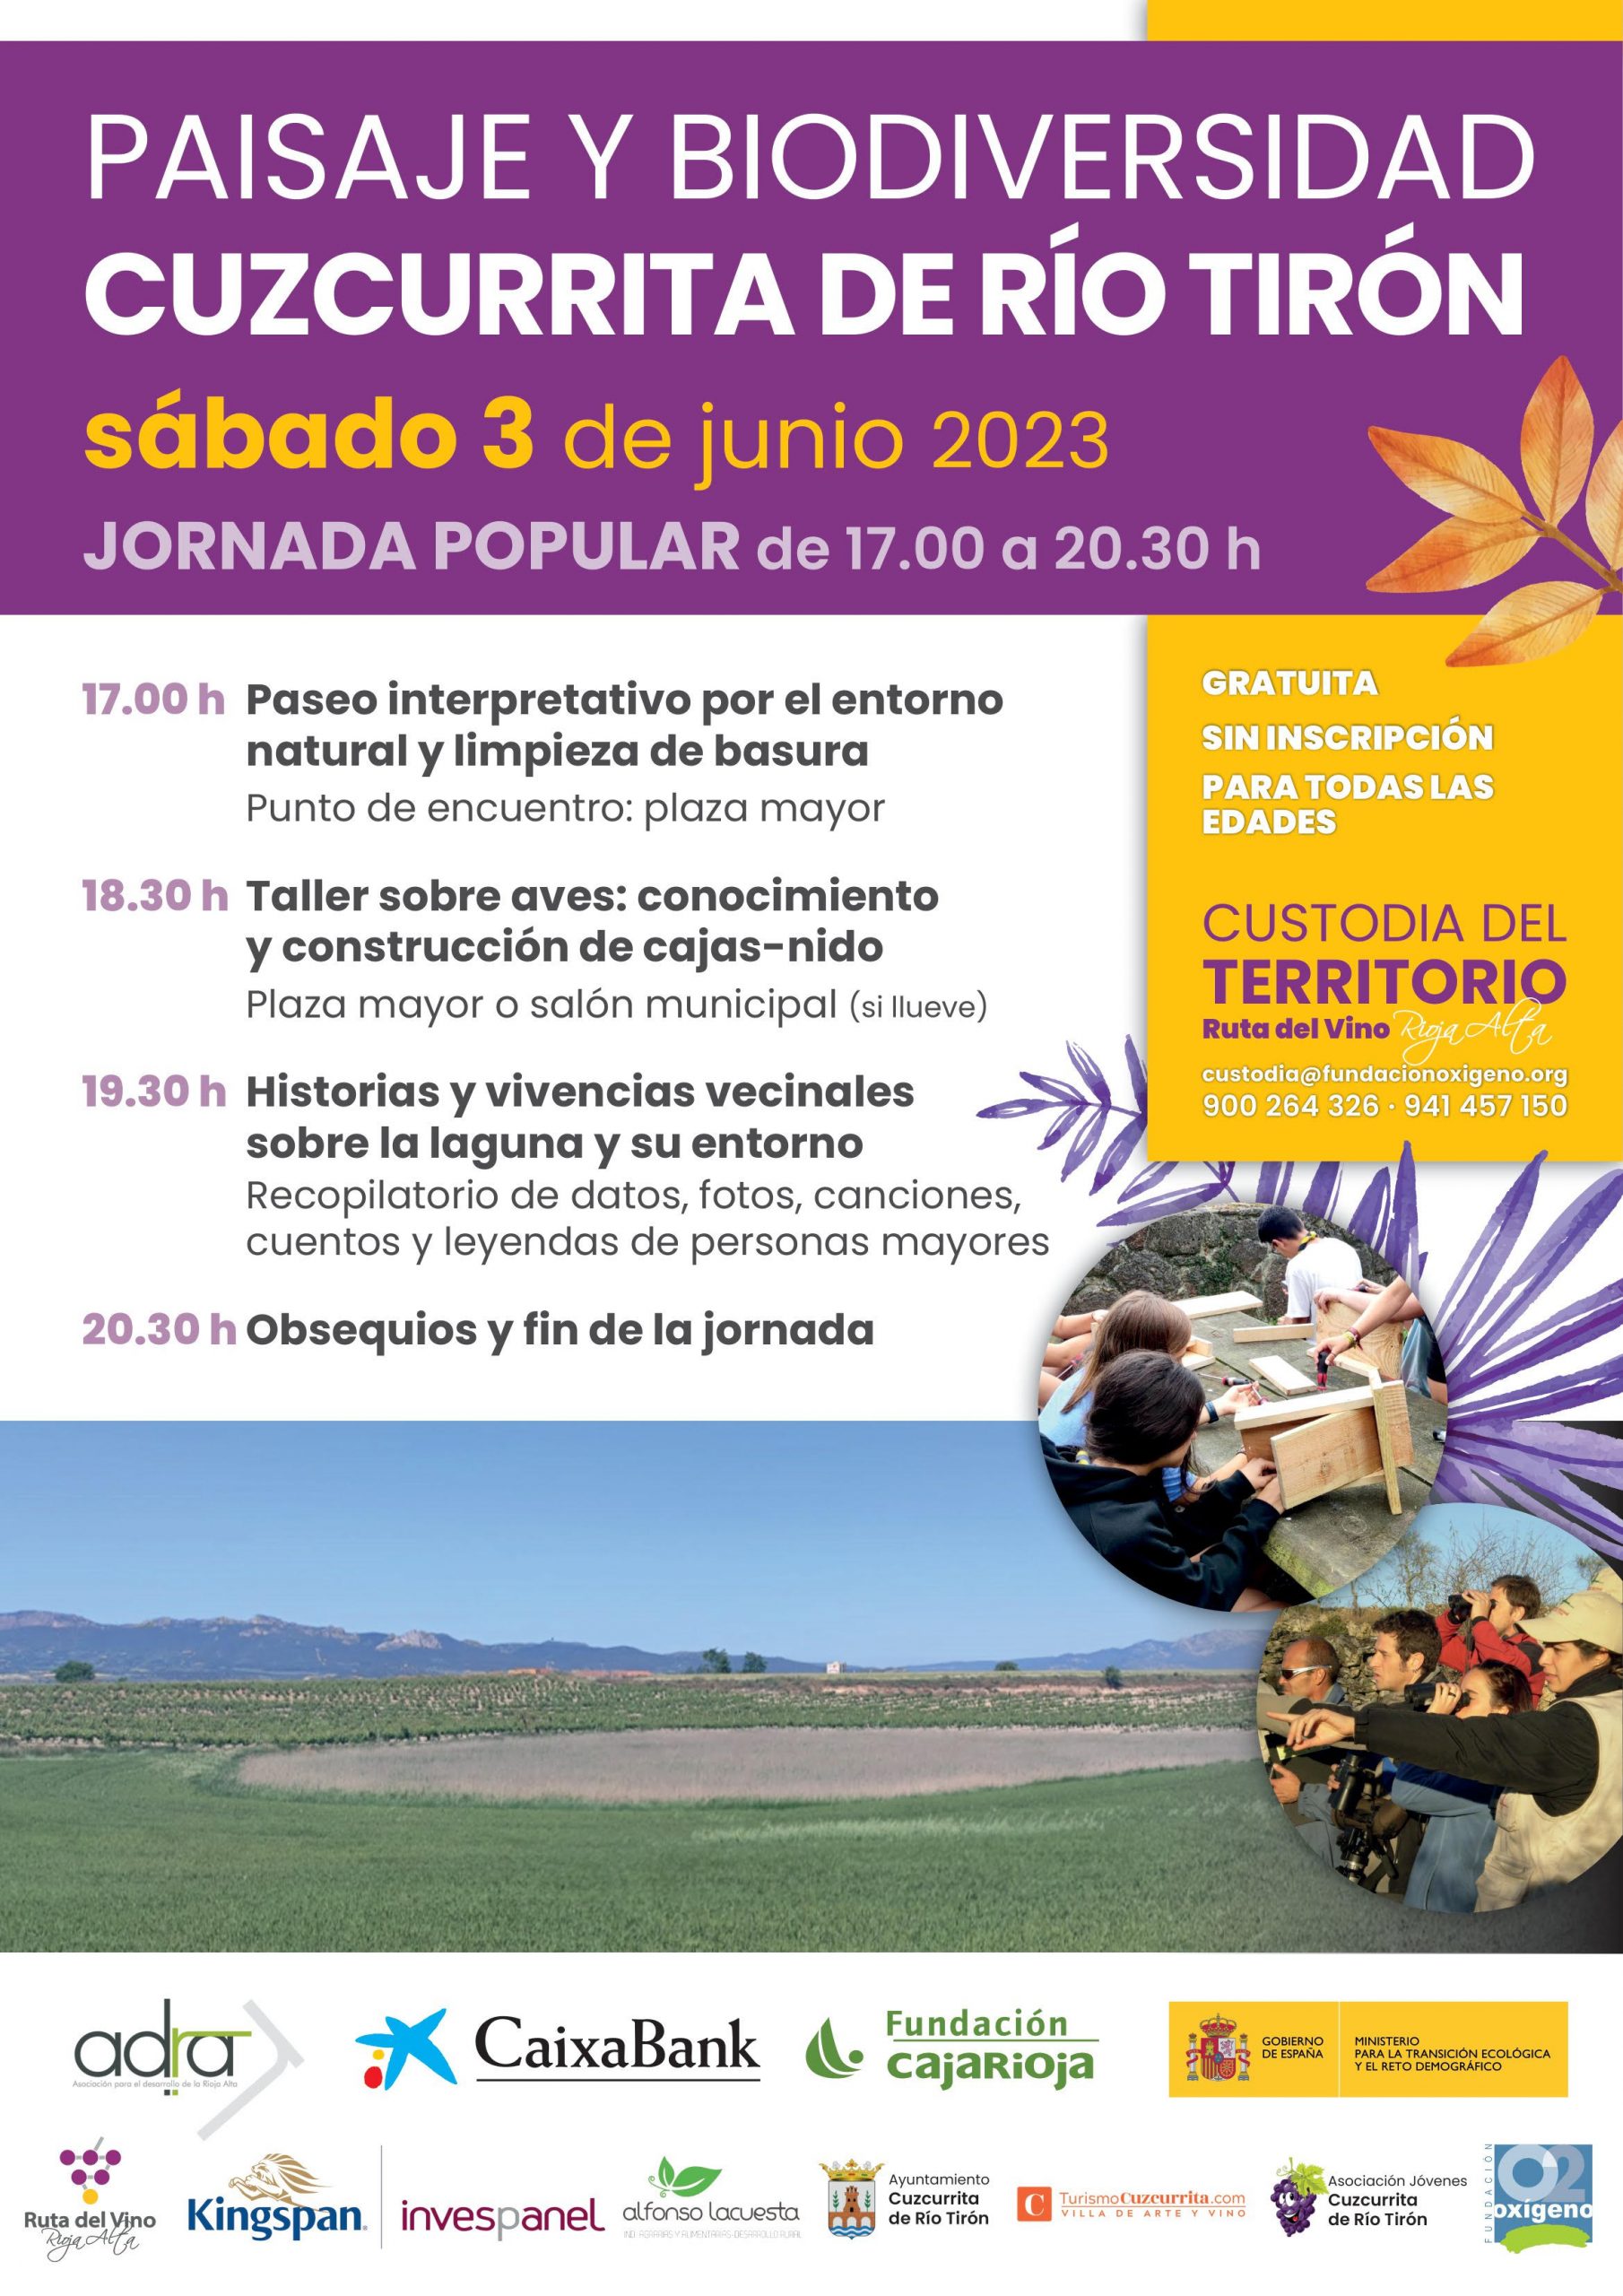 2023 - Paisaje y Biodiversidad de Cuzcurrita de Río Tirón